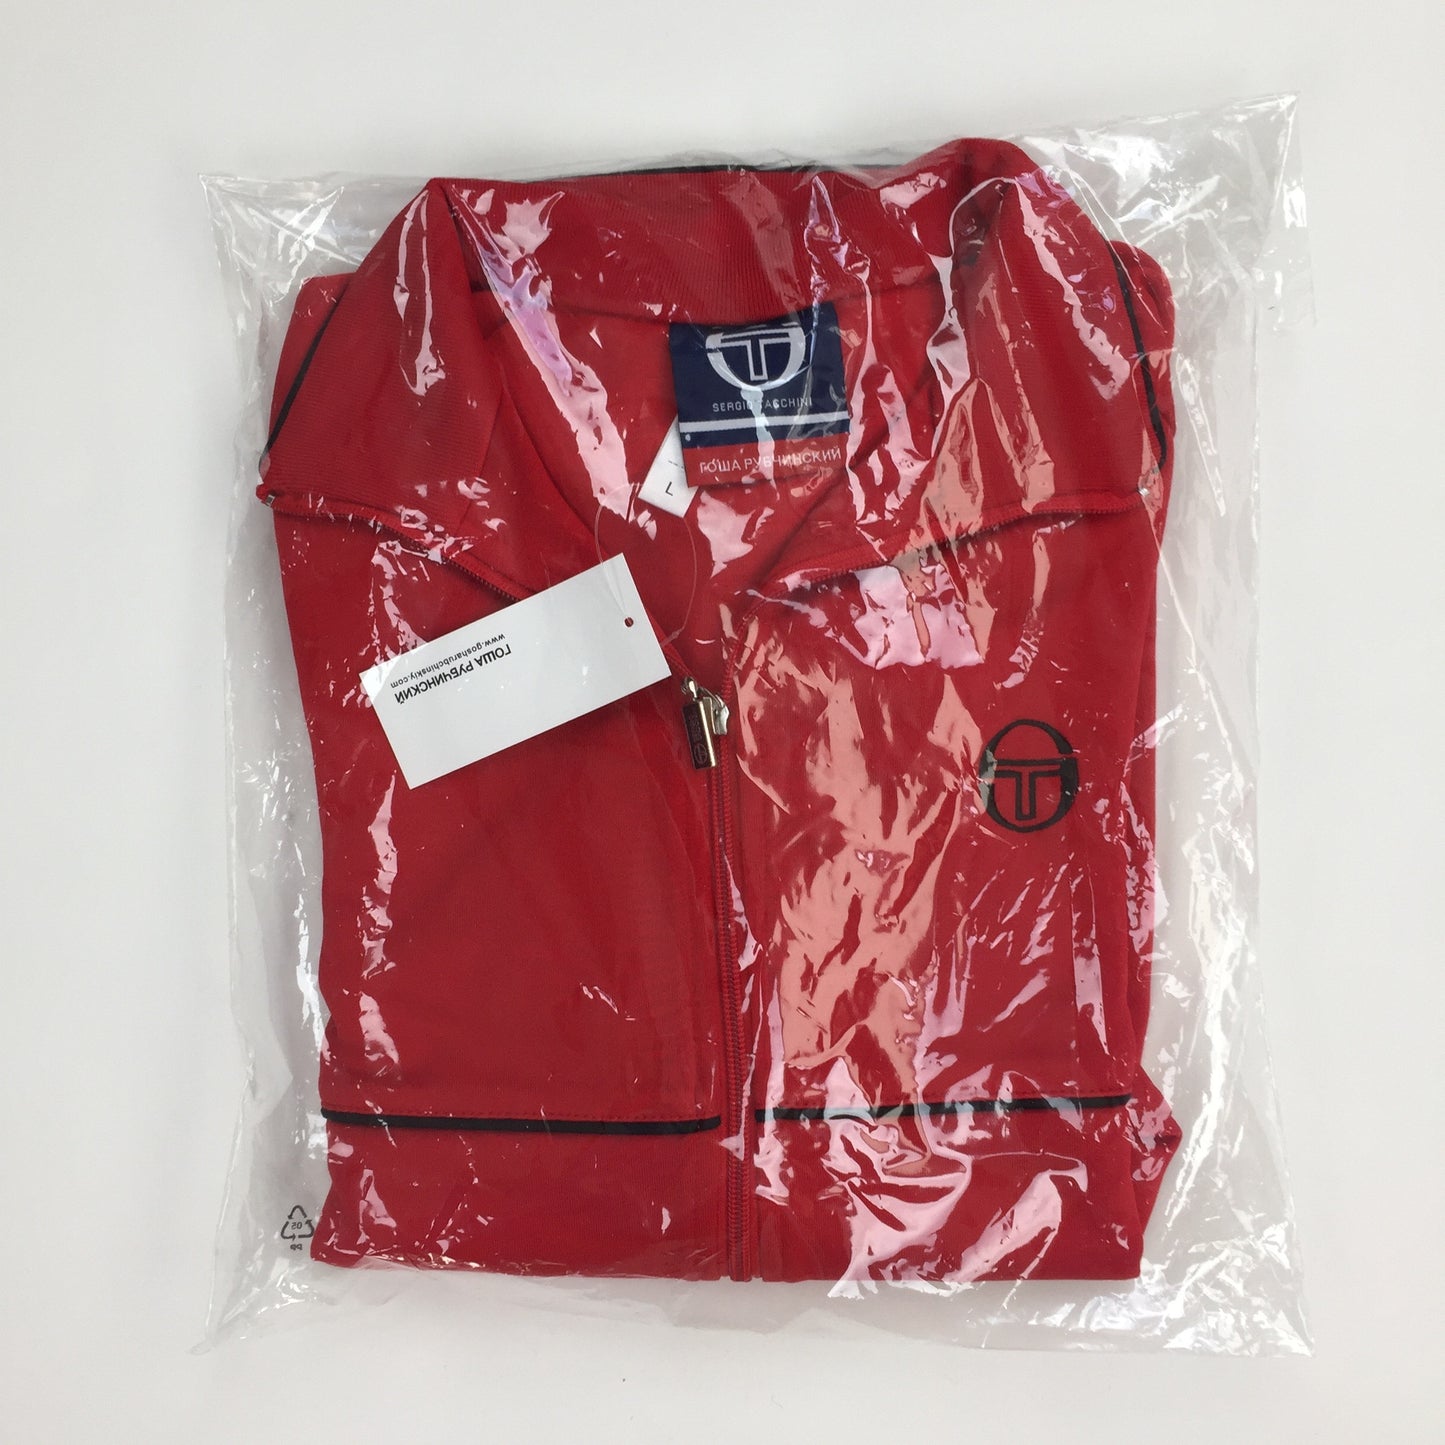 Gosha Rubchinskiy x Sergio Tacchini - Red Logo Embroidered Track Jacket